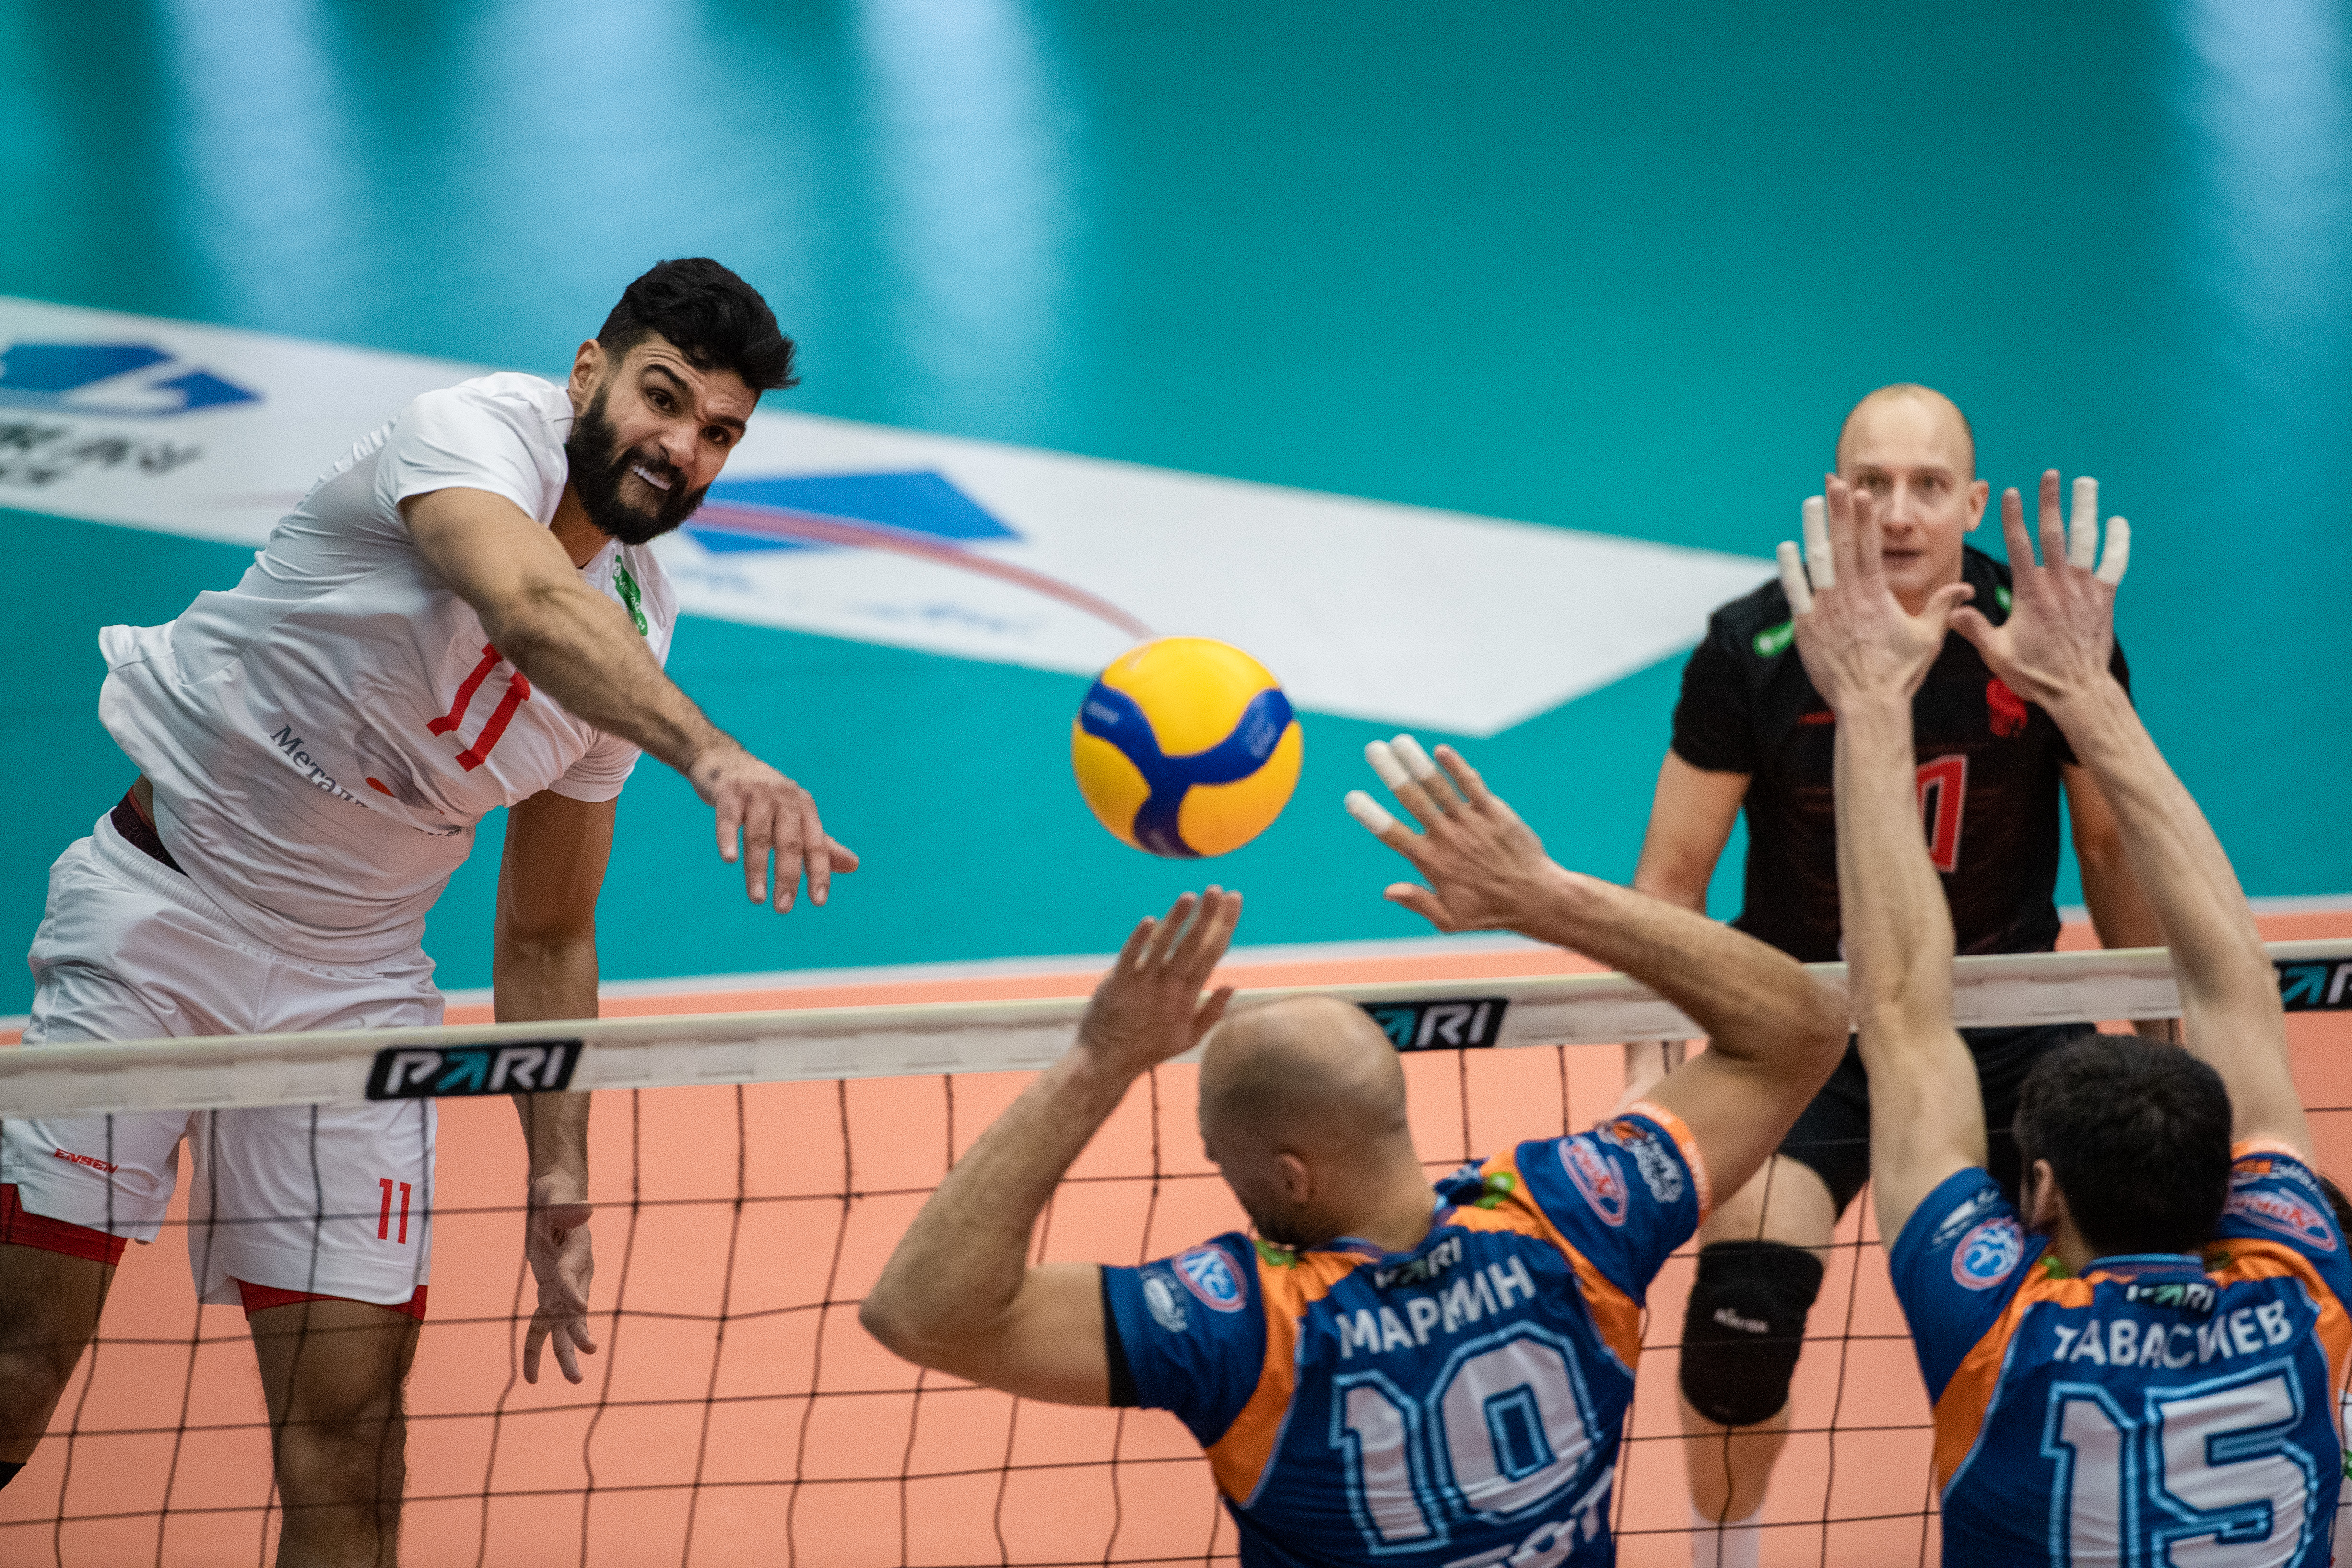 Волейбол чемпионат россии мужчины кузбасс белогорье